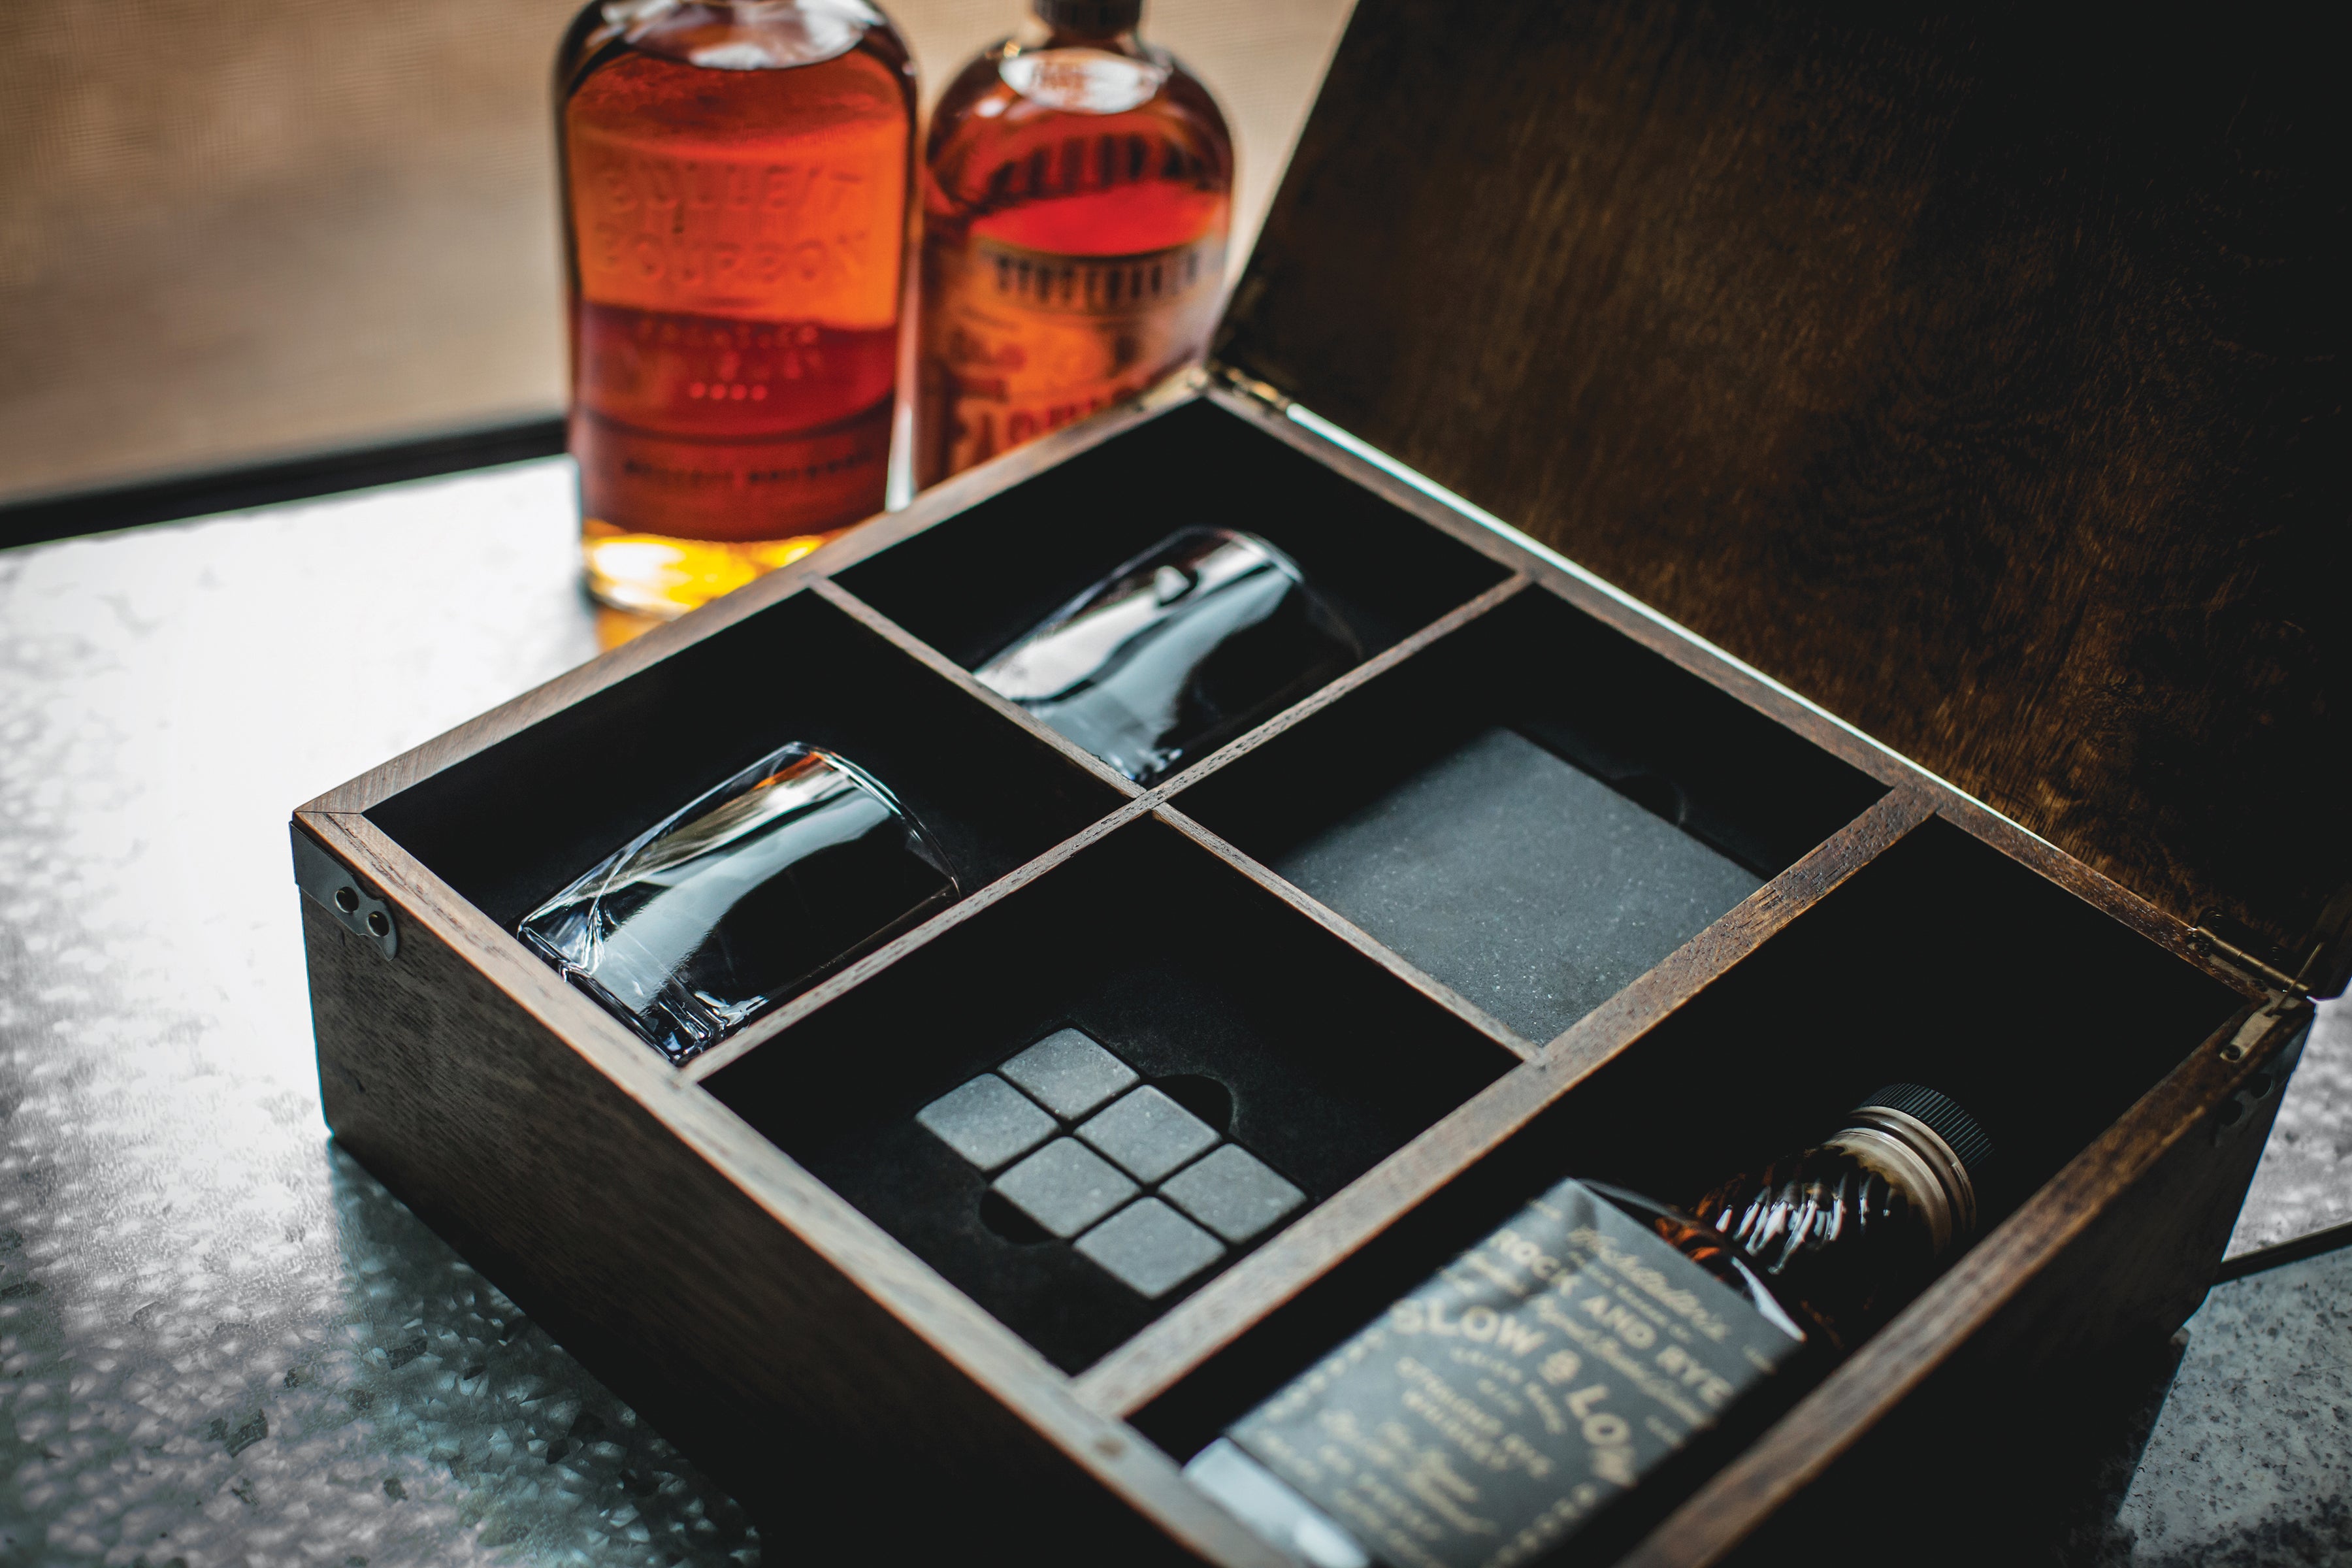 Whiskey Box Gift Set